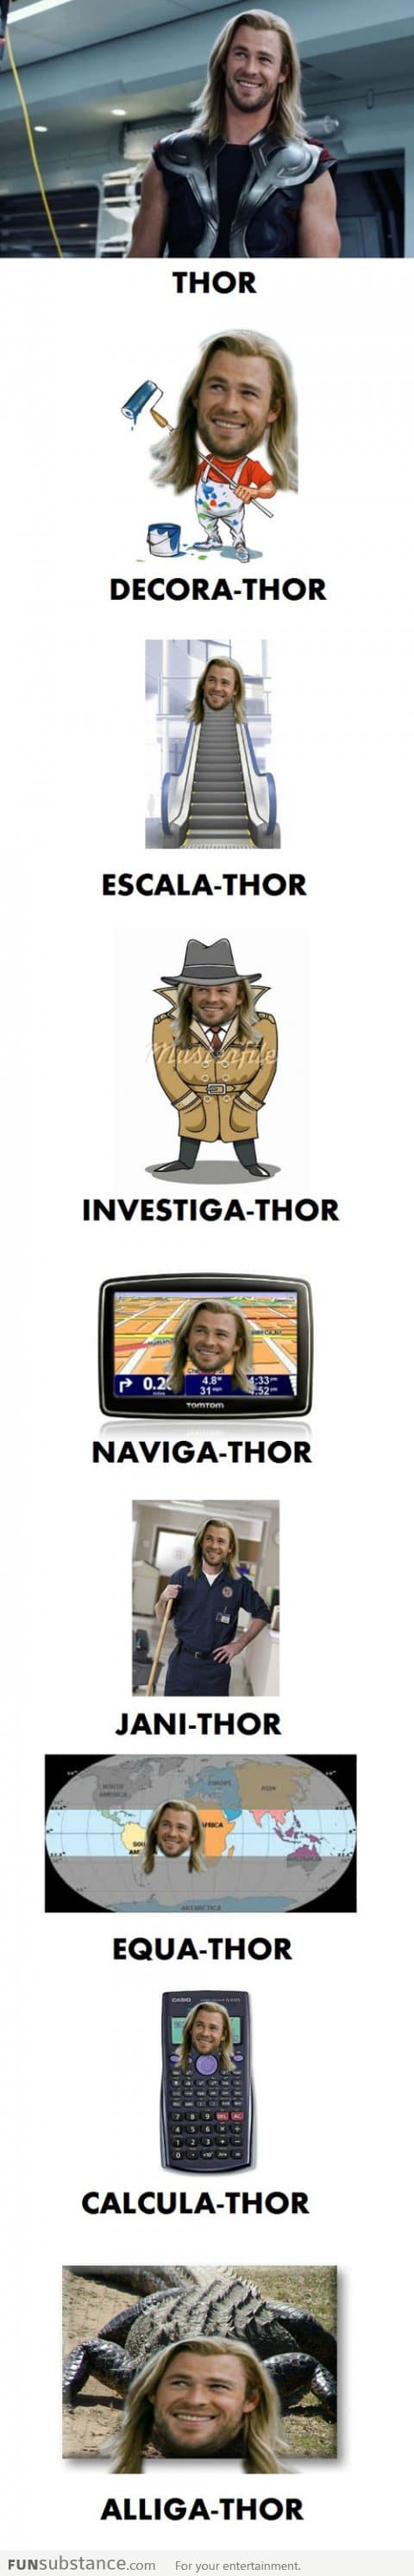 Thor Everywhere